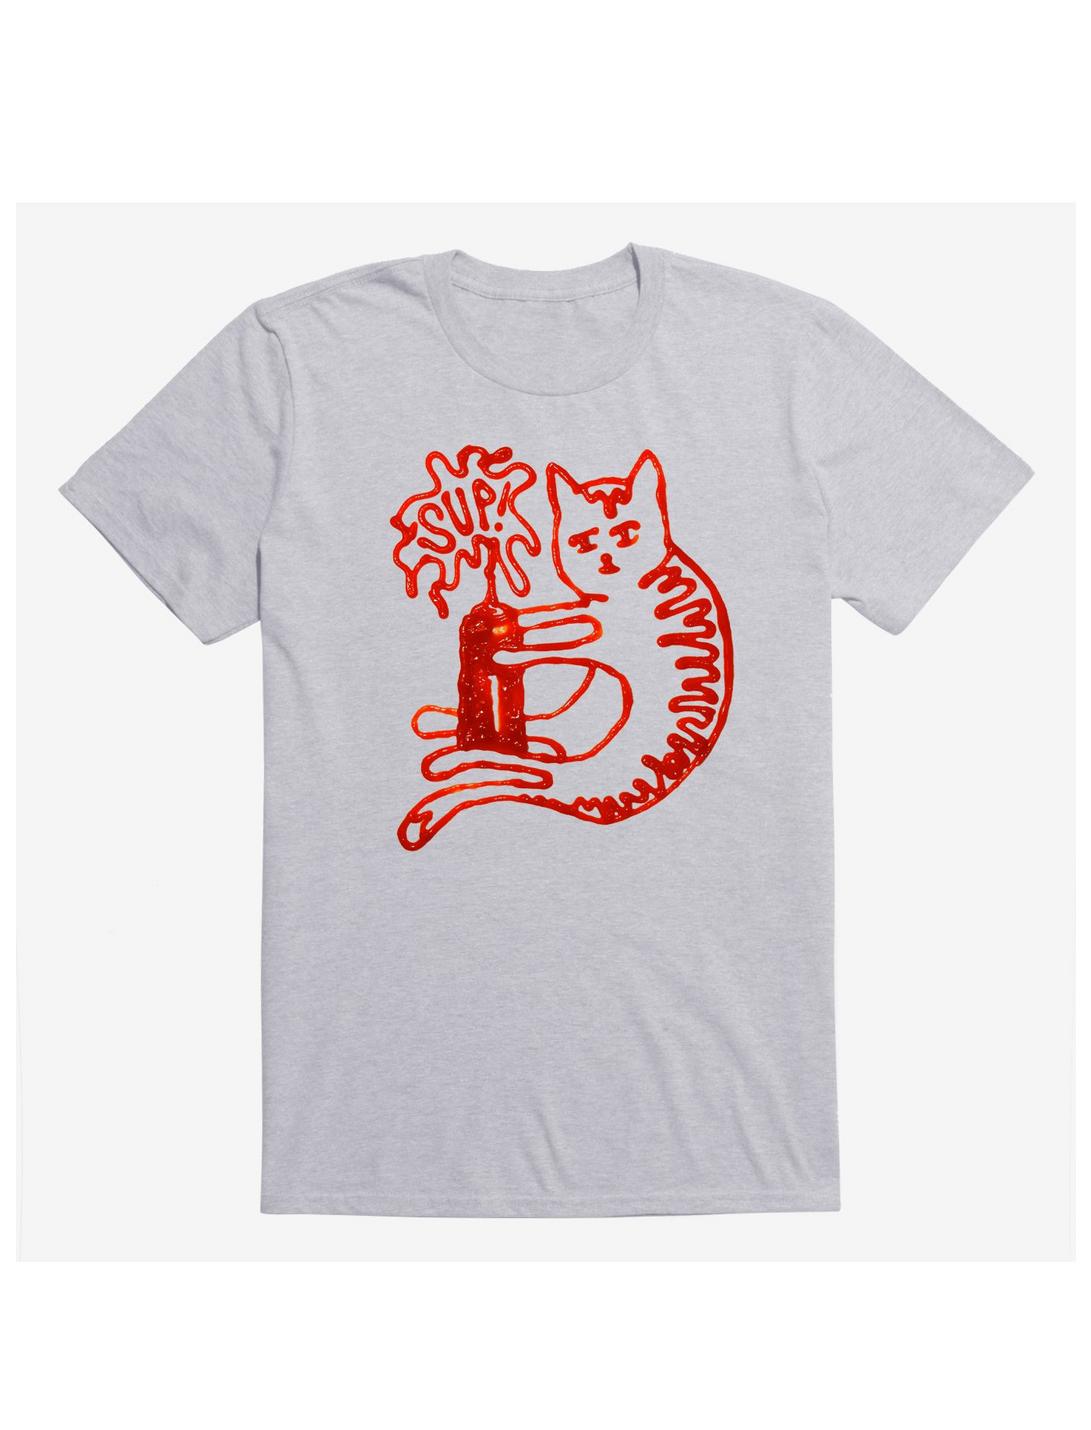 Catsup Cat Ketchup Sport Grey T-Shirt, SPORT GRAY, hi-res